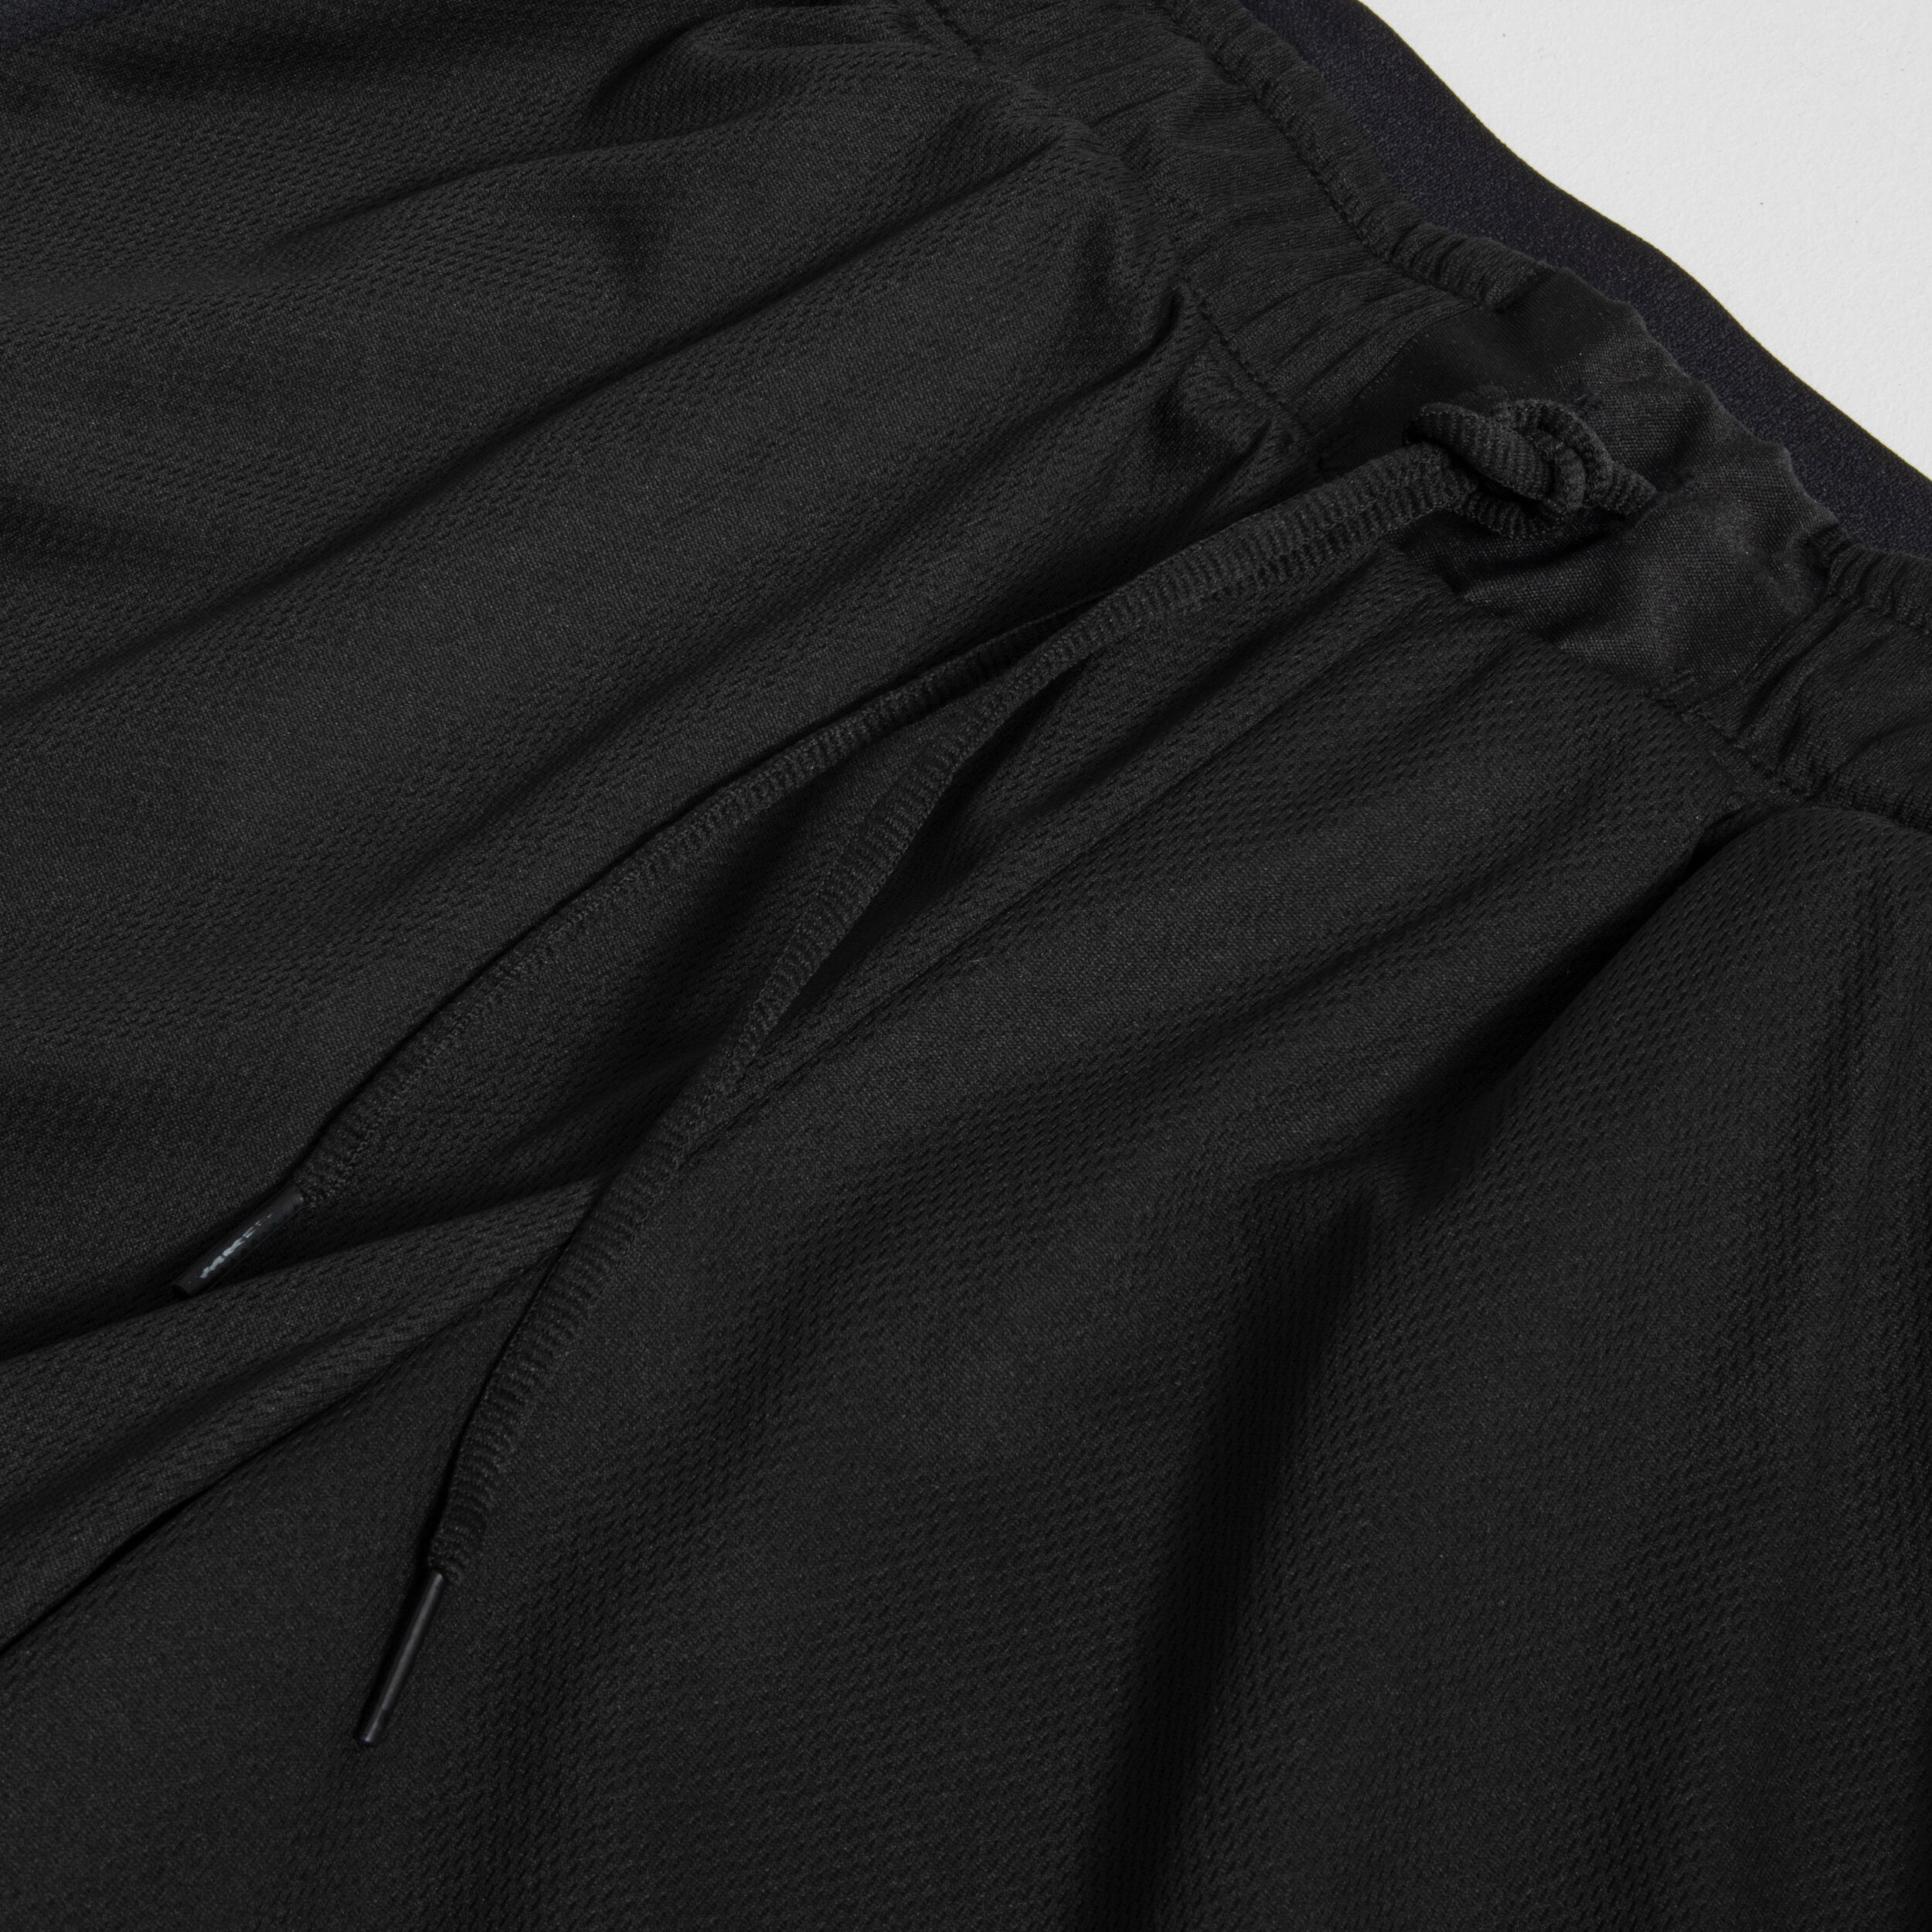 Men's/Women's Reversible Basketball Shorts SH500R - Beige/Black 10/10